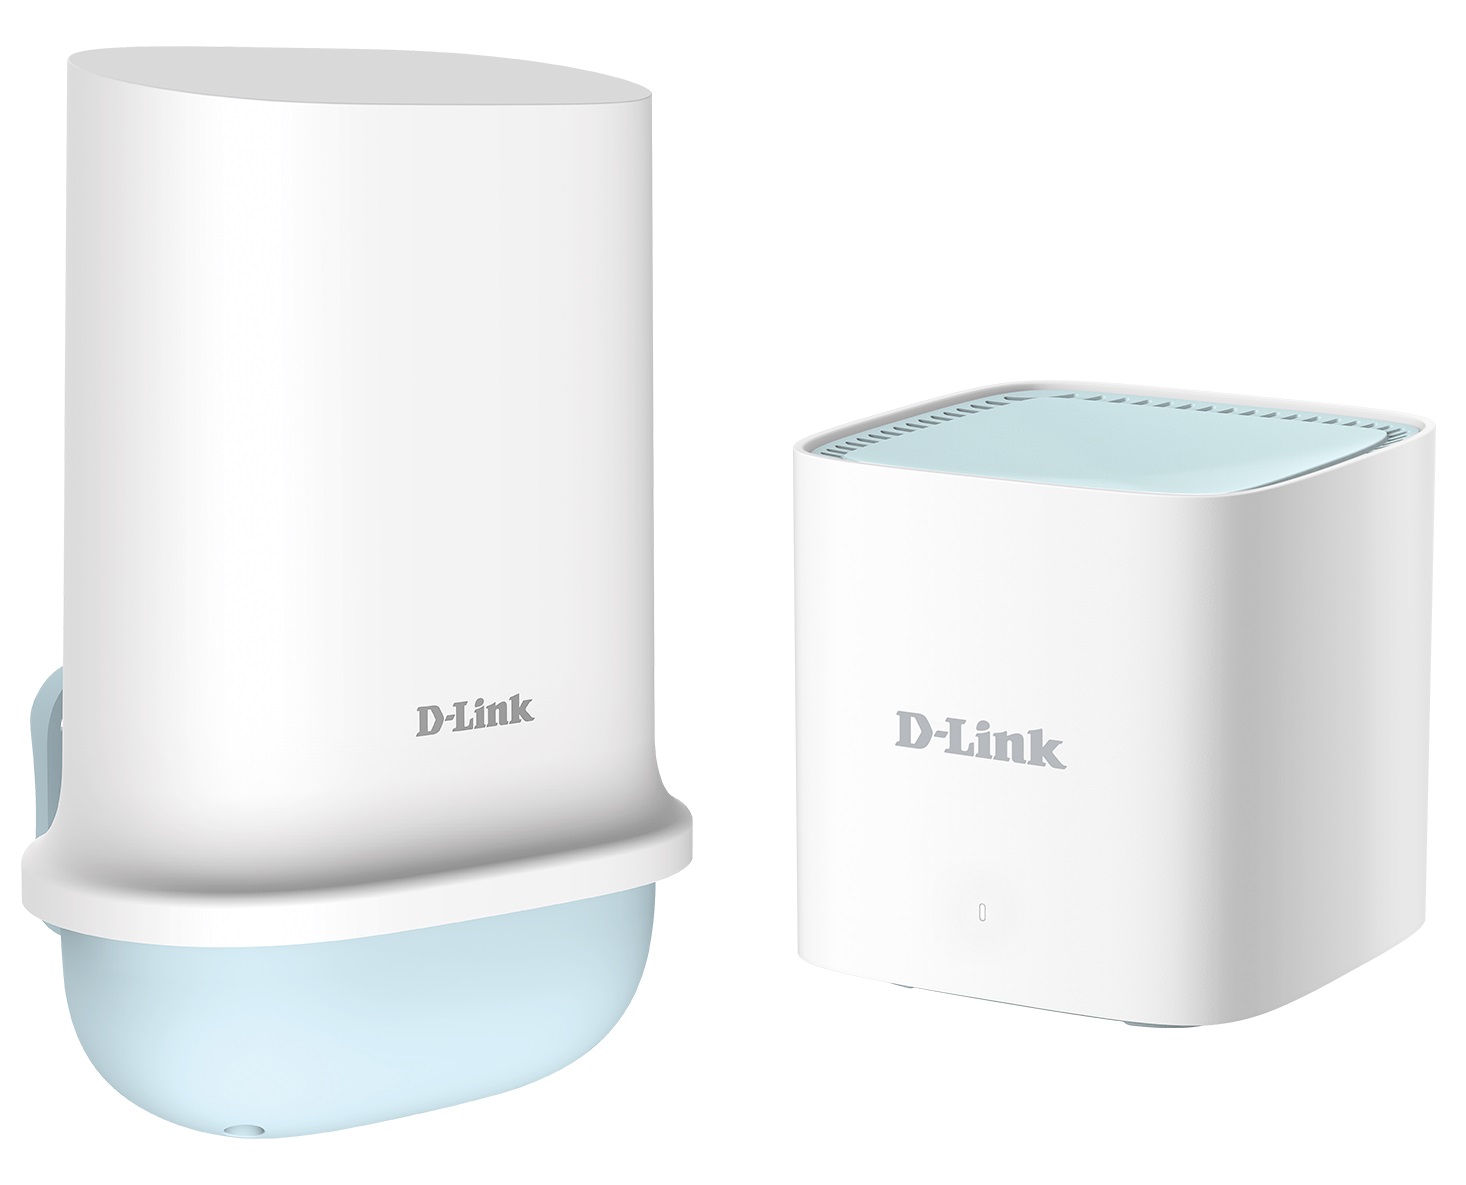 D-Link DWP-1010/KT - 5G/LTE Outdoor CPE (ODU Unit), 1x 1GbE port + M15 (IDU Unit)